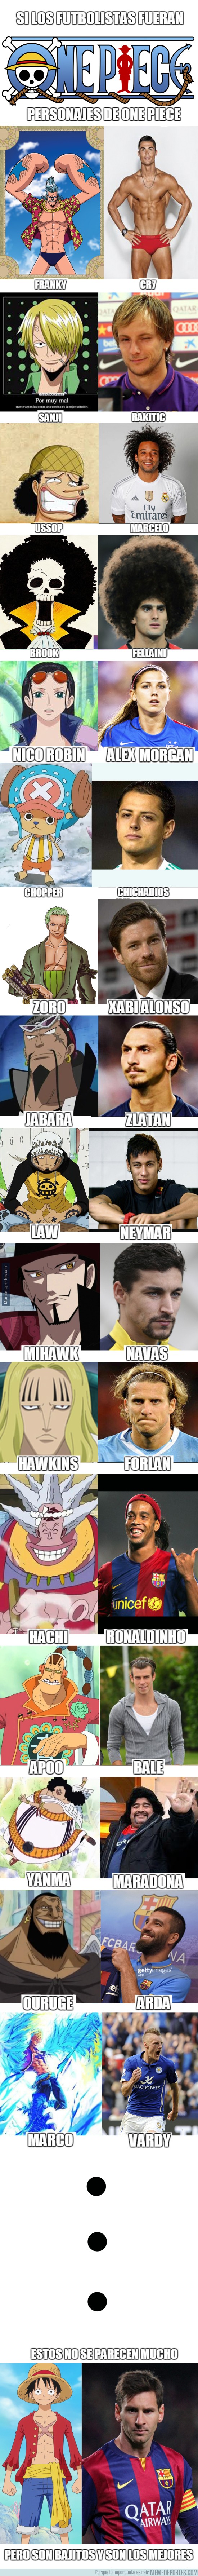 800333 - Si los futbolistas fueran personajes de One Piece